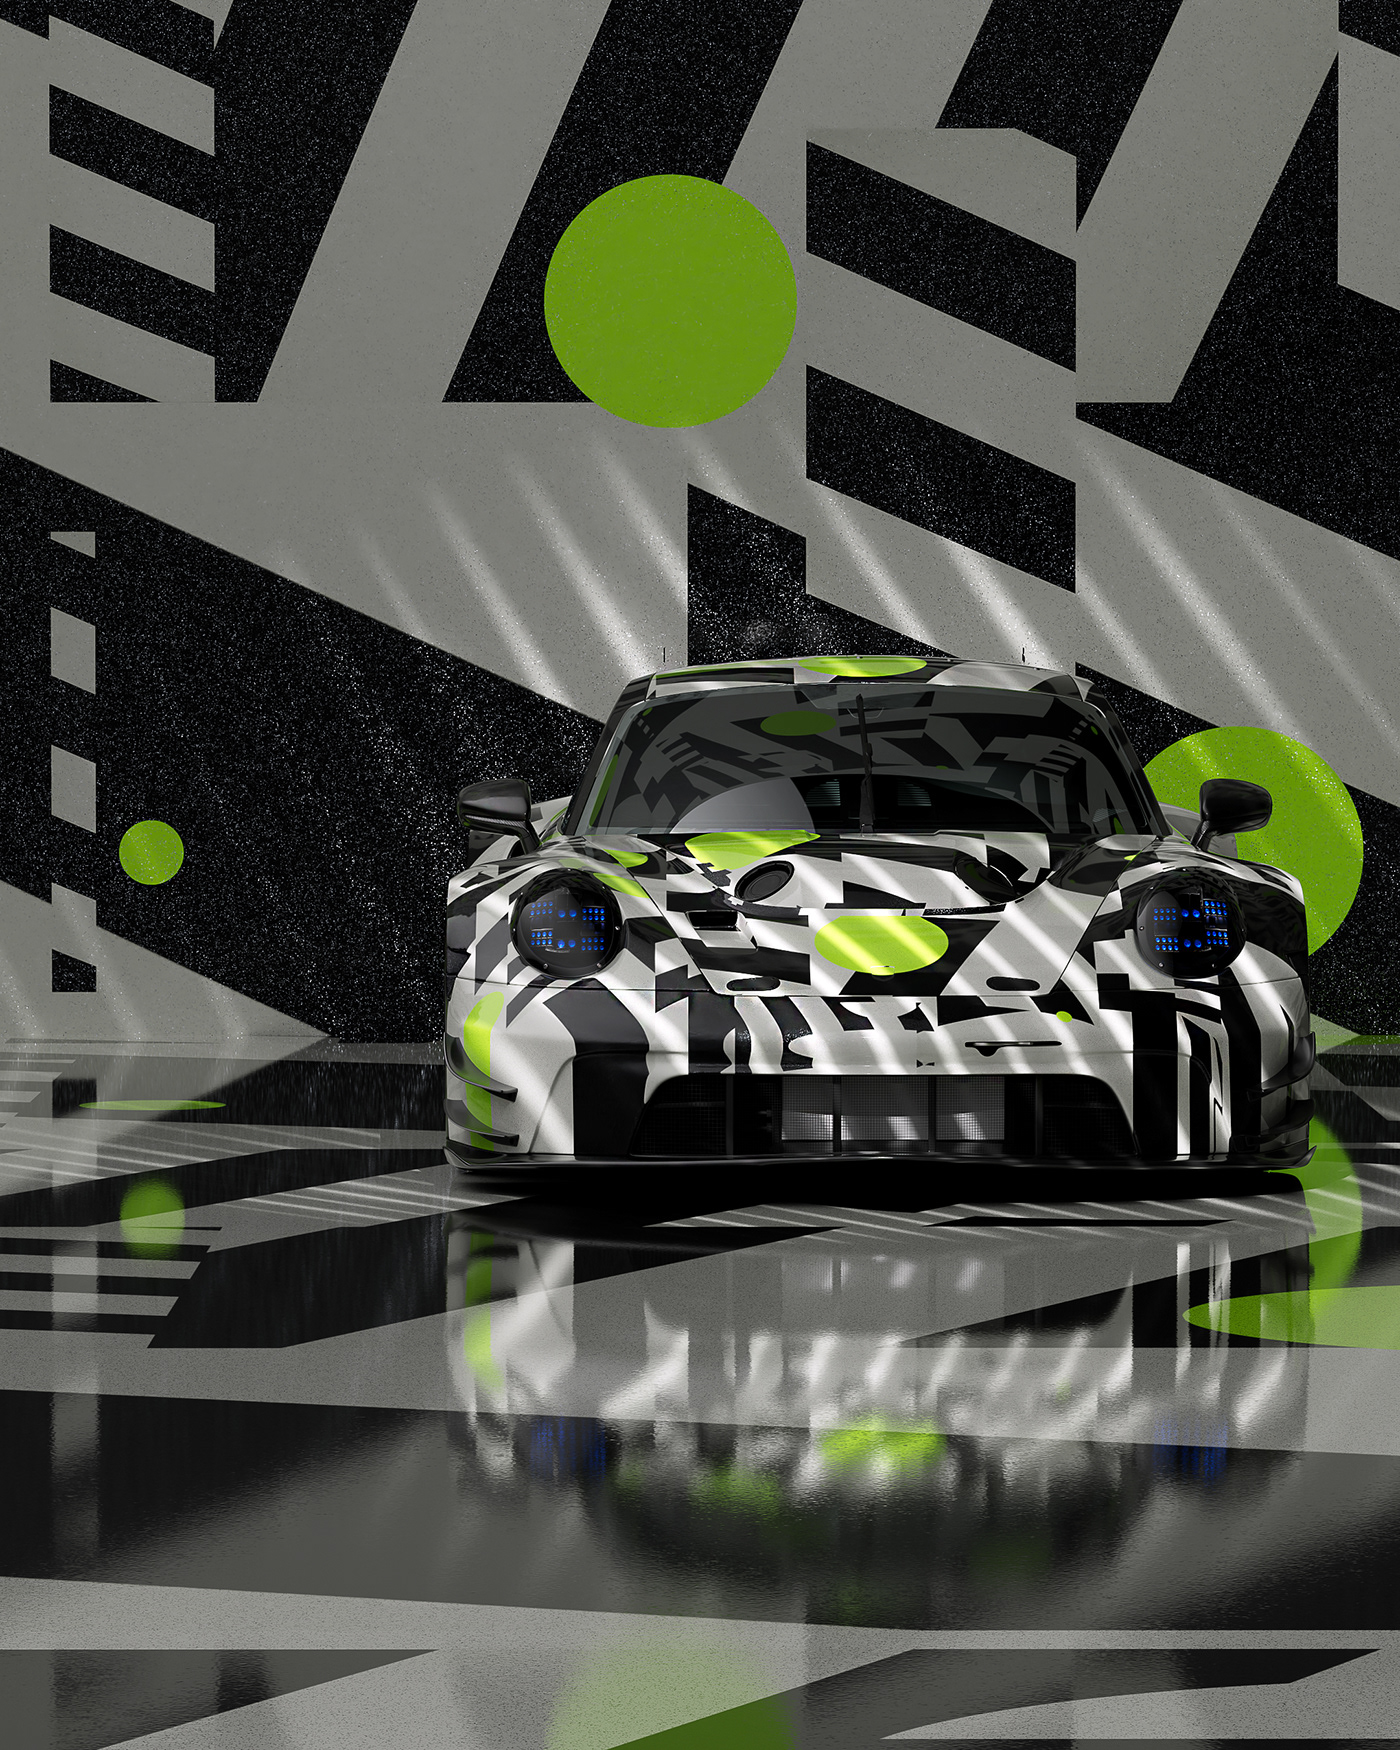 3D artcars Cars Supercars surealism Porsche